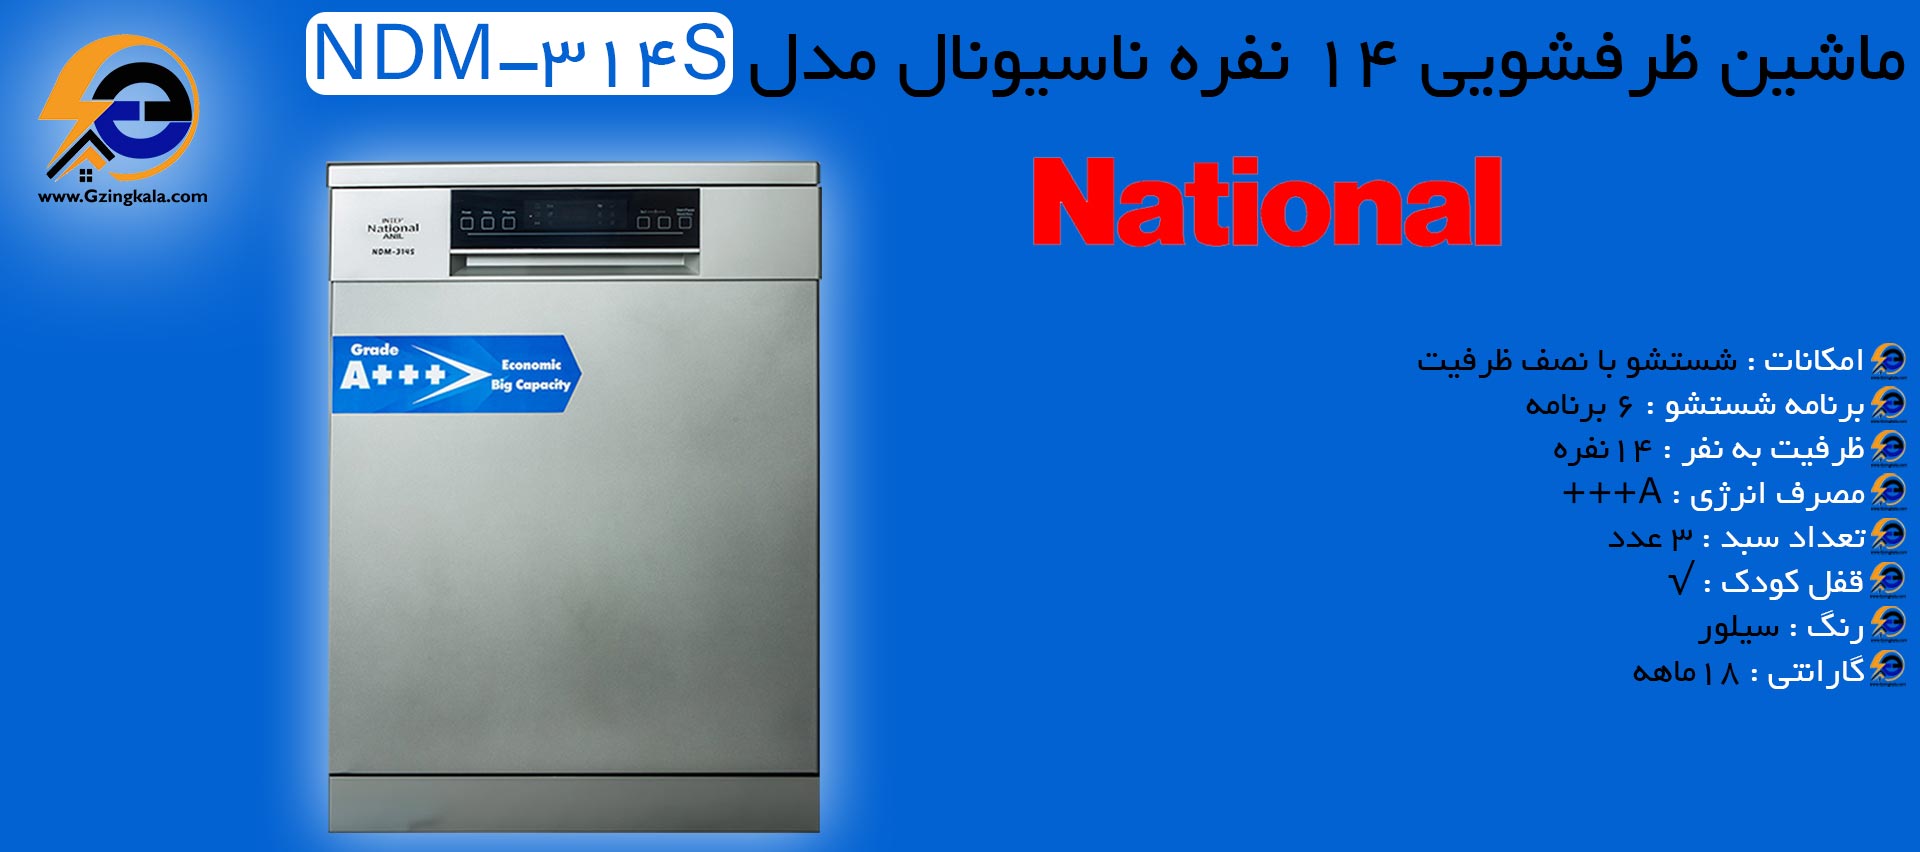 ماشین ظرفشویی 14 نفره ناسیونال مدل NDM-314S